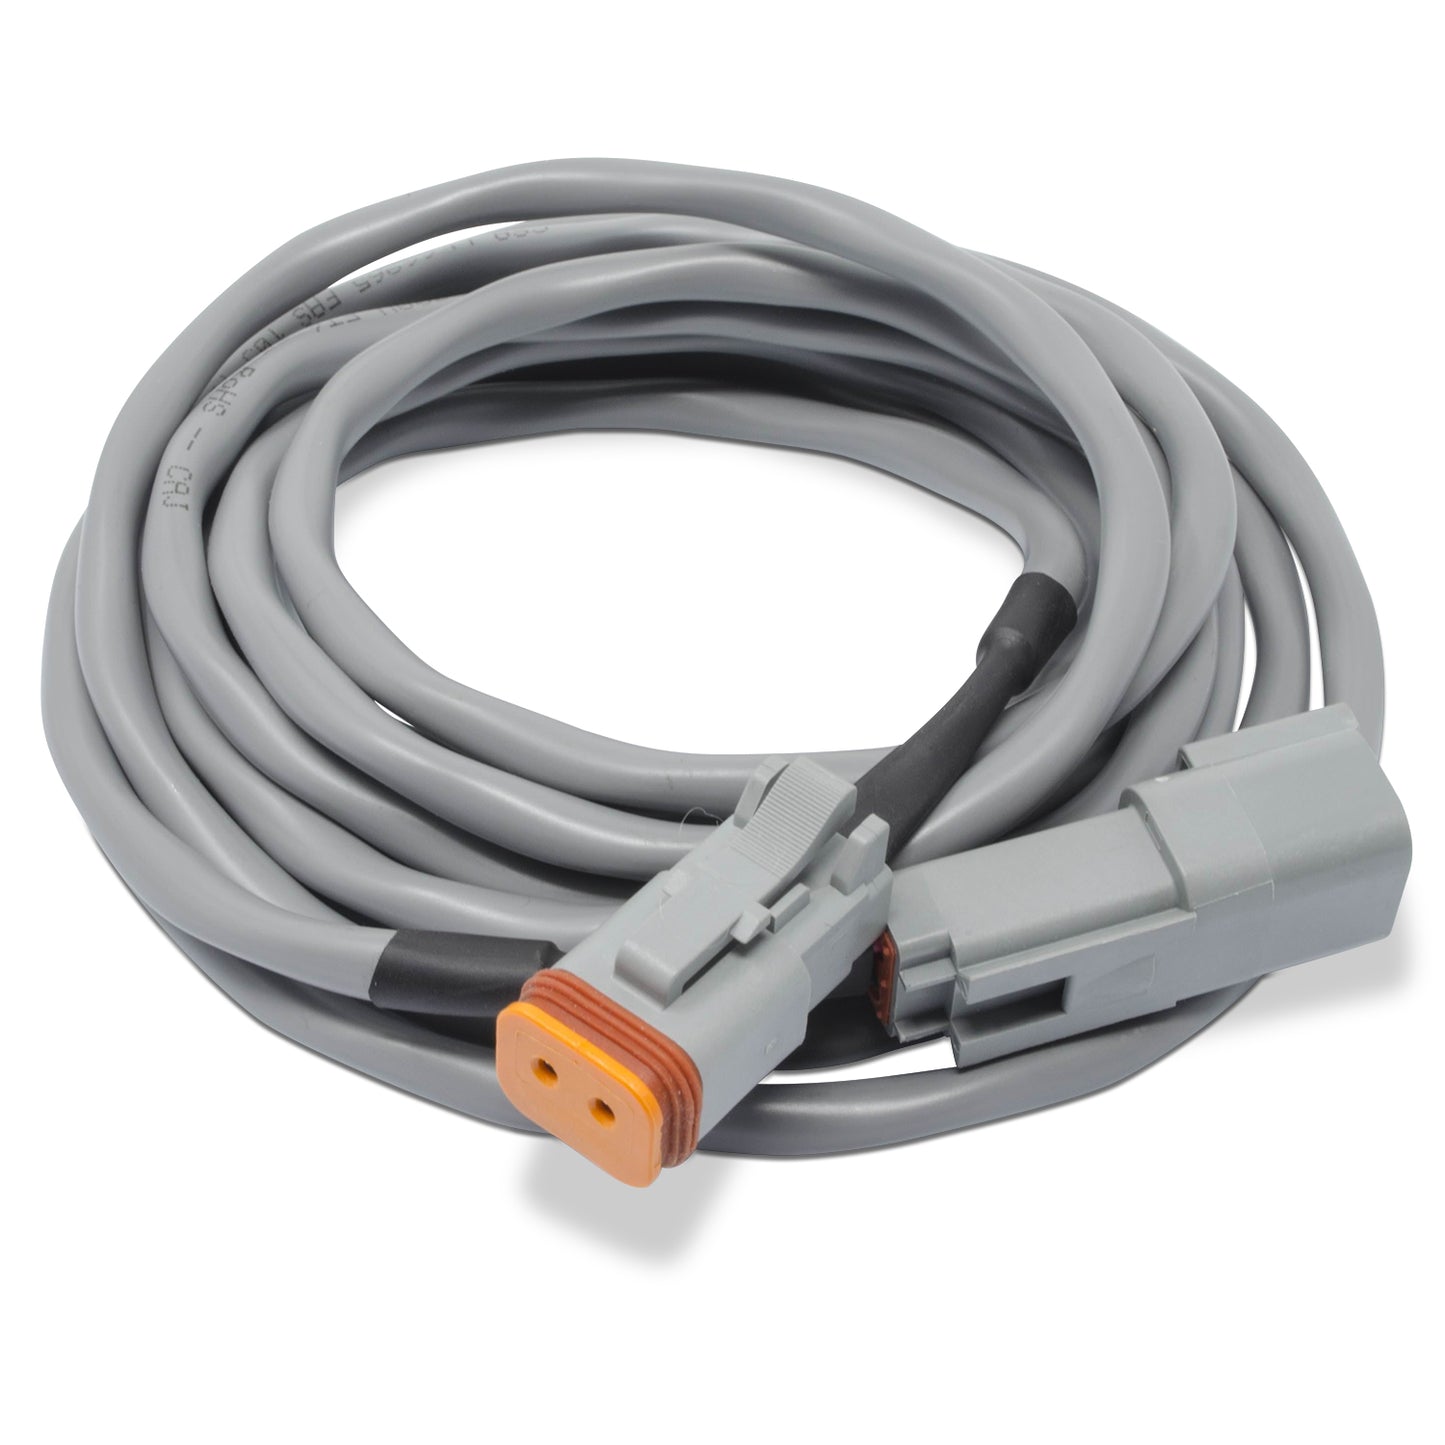 40Õ 12.2 m) Extension Cable - Deutsch connectors